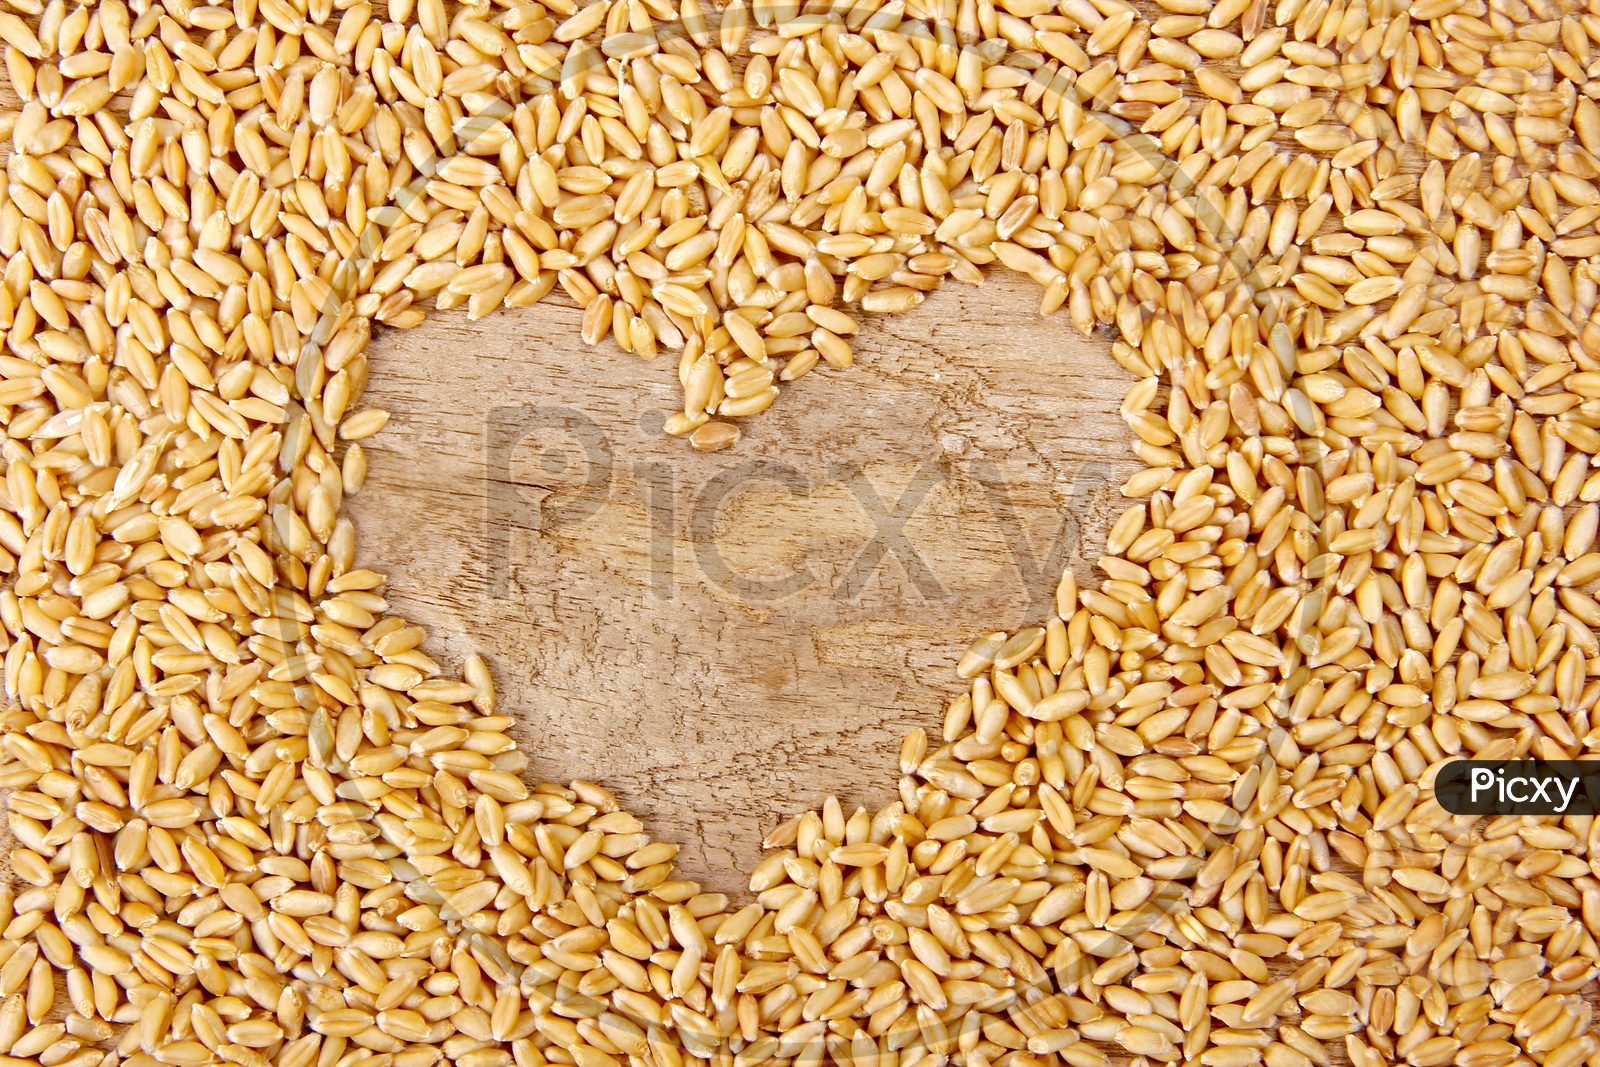 Wheat / Wheat Grains / Wheat Grains Closeup Shot / Golden Colour Wheat Grains / Wheat Yeild / Ceral Grain